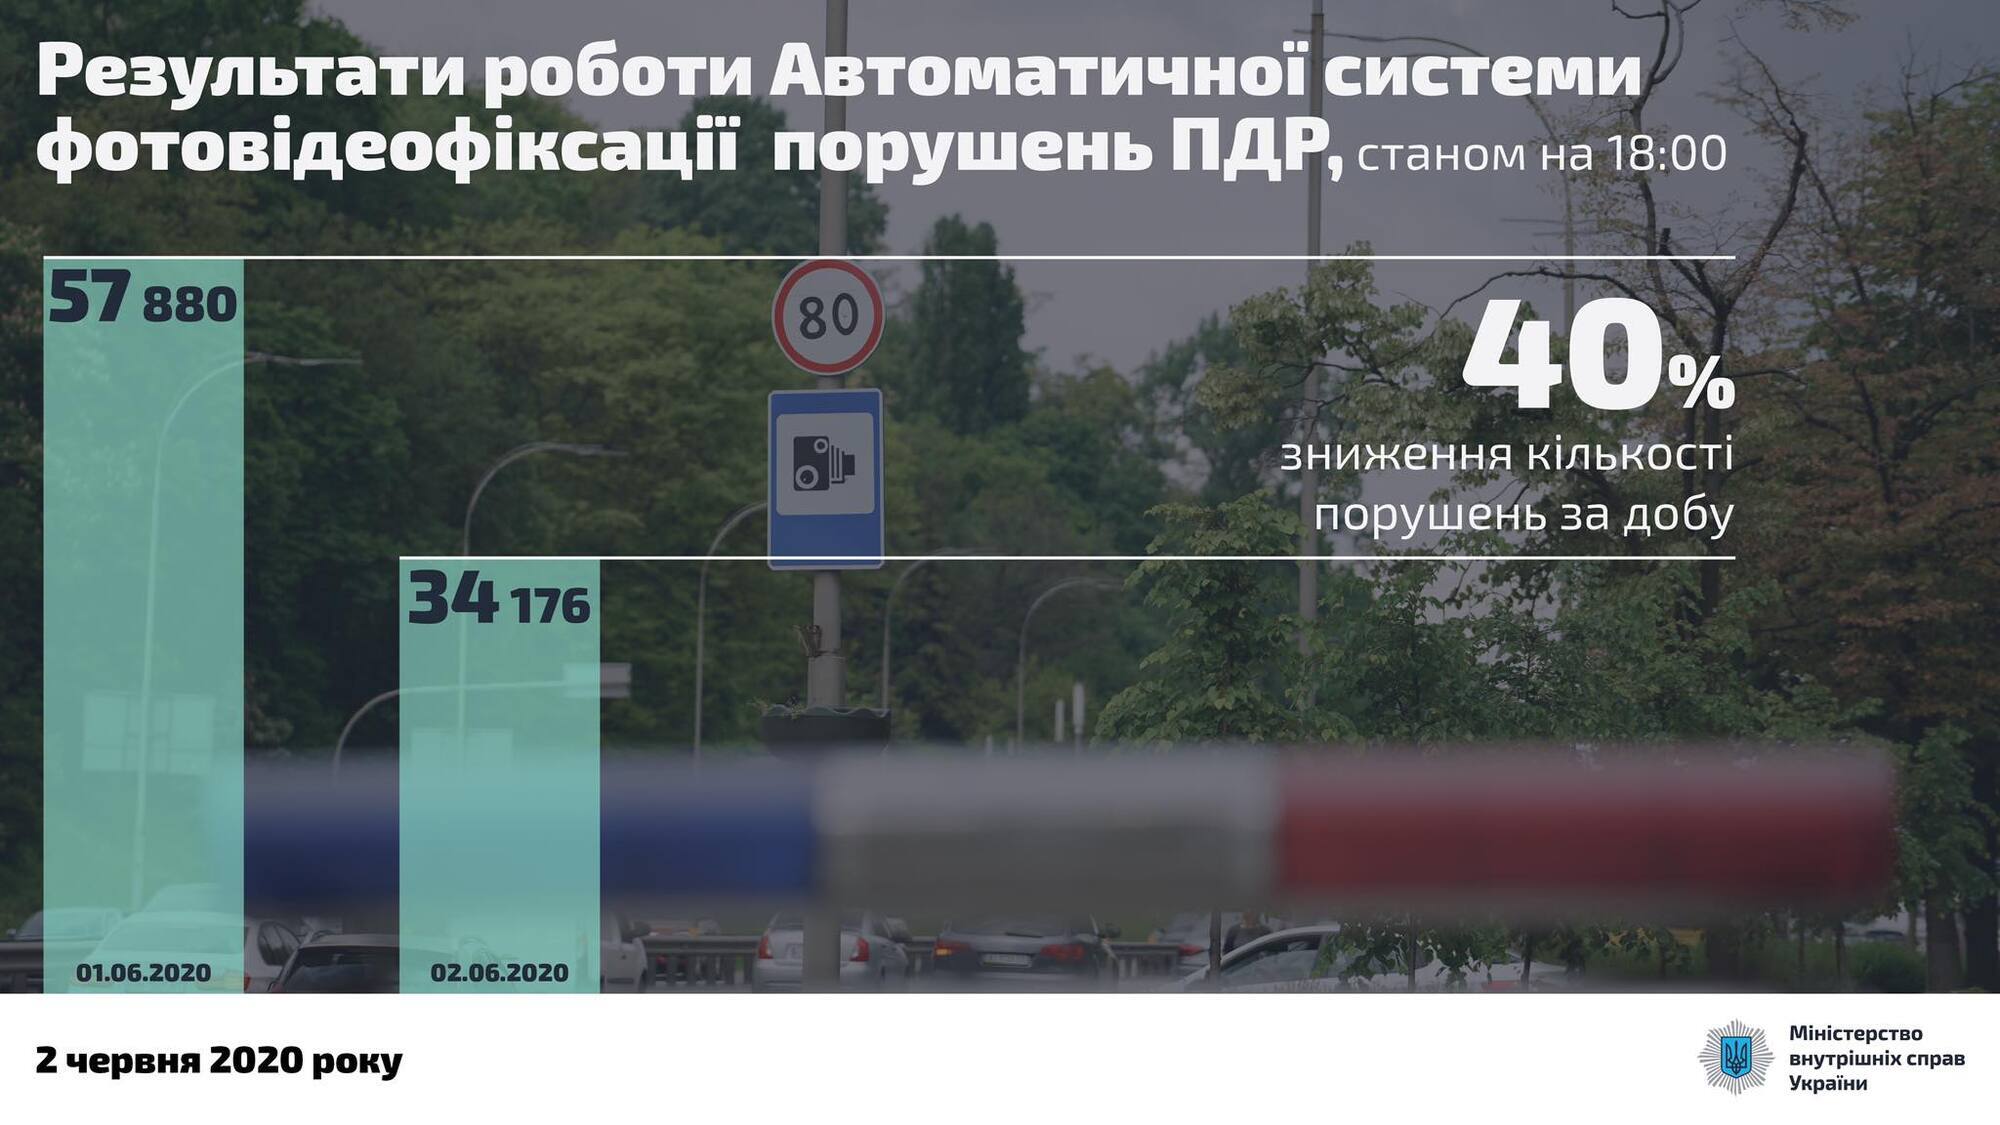 Рекорд дня – 210 км/час: в МВД опубликовали "список потенциальных убийц"